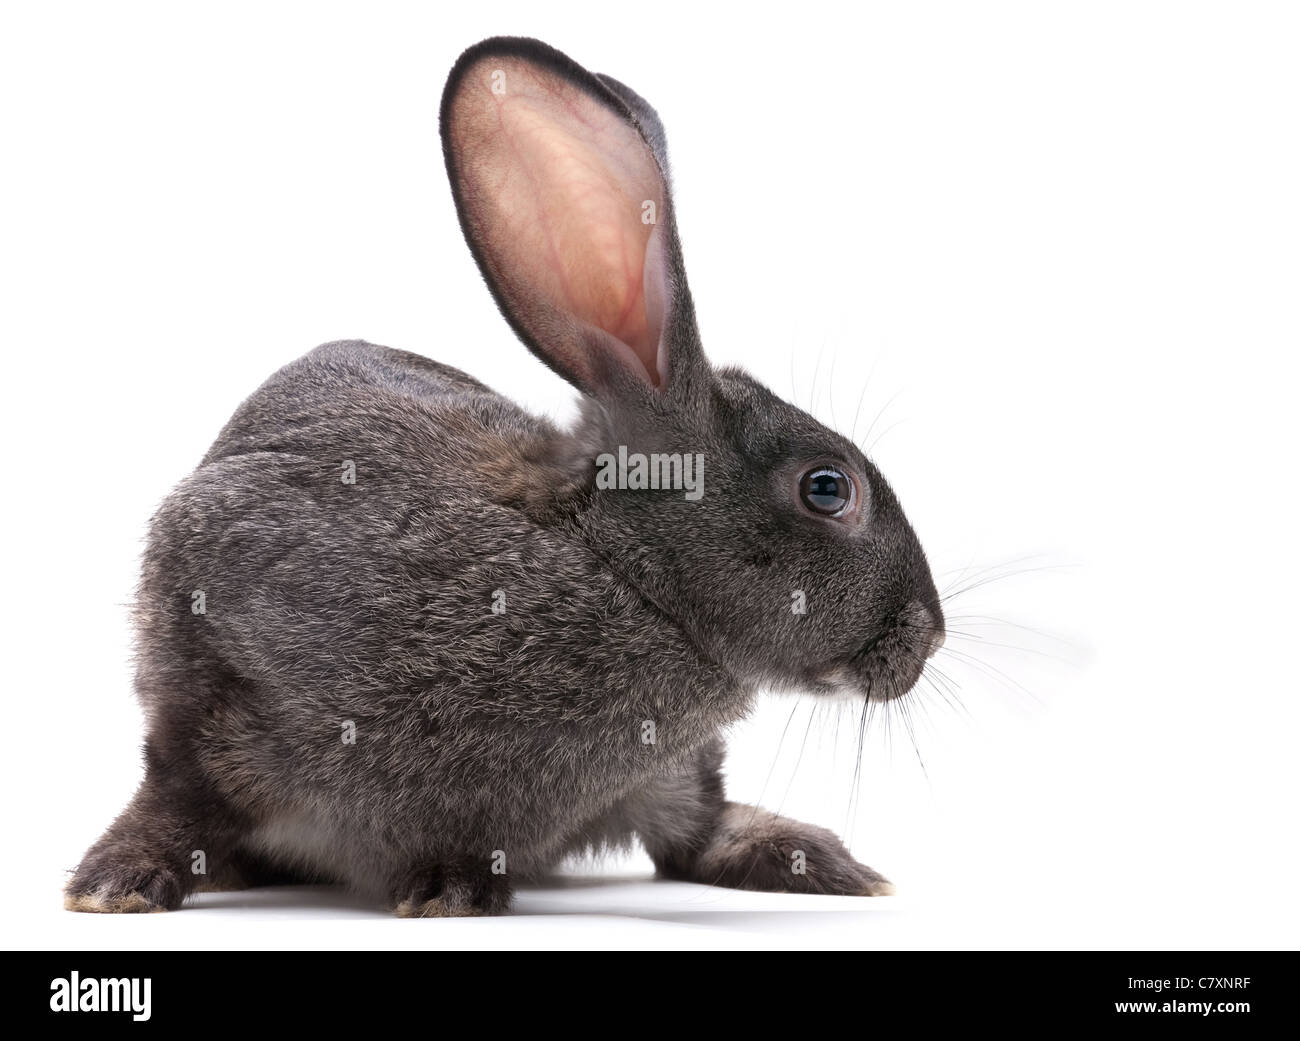 Rabbit farm animal closeup on white background Stock Photo